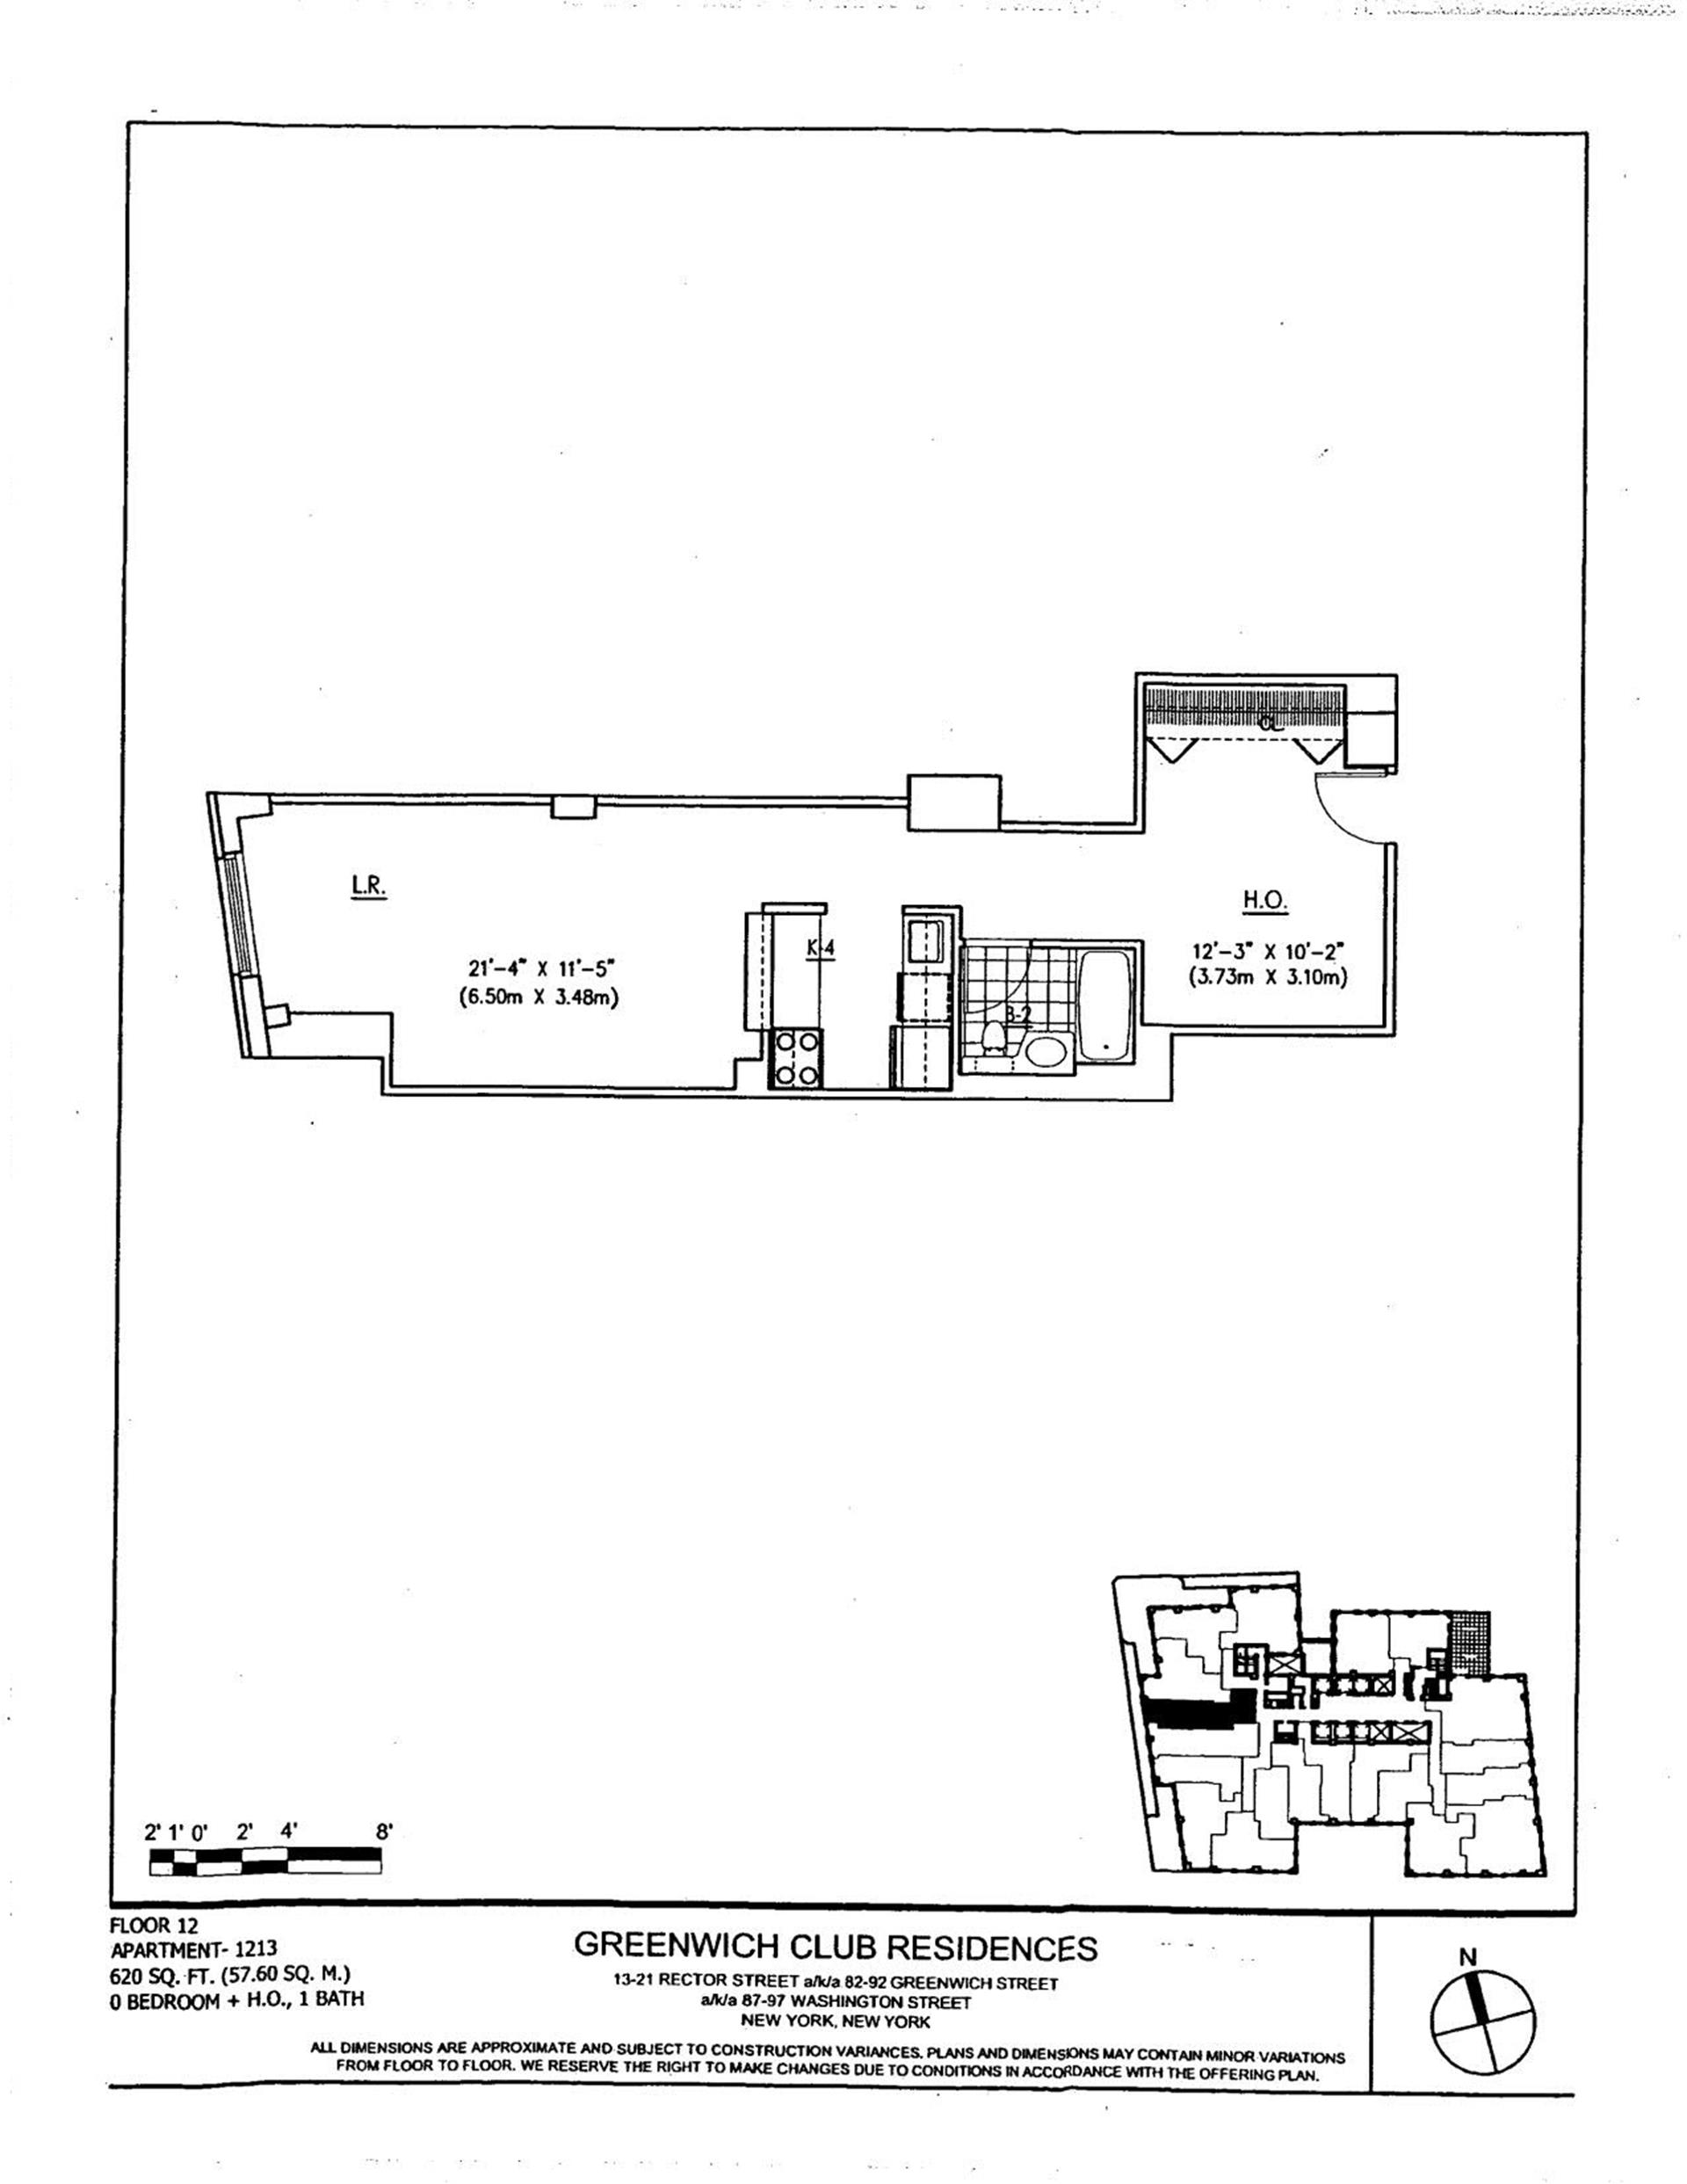 Floorplan for 88 Greenwich Street, 1213